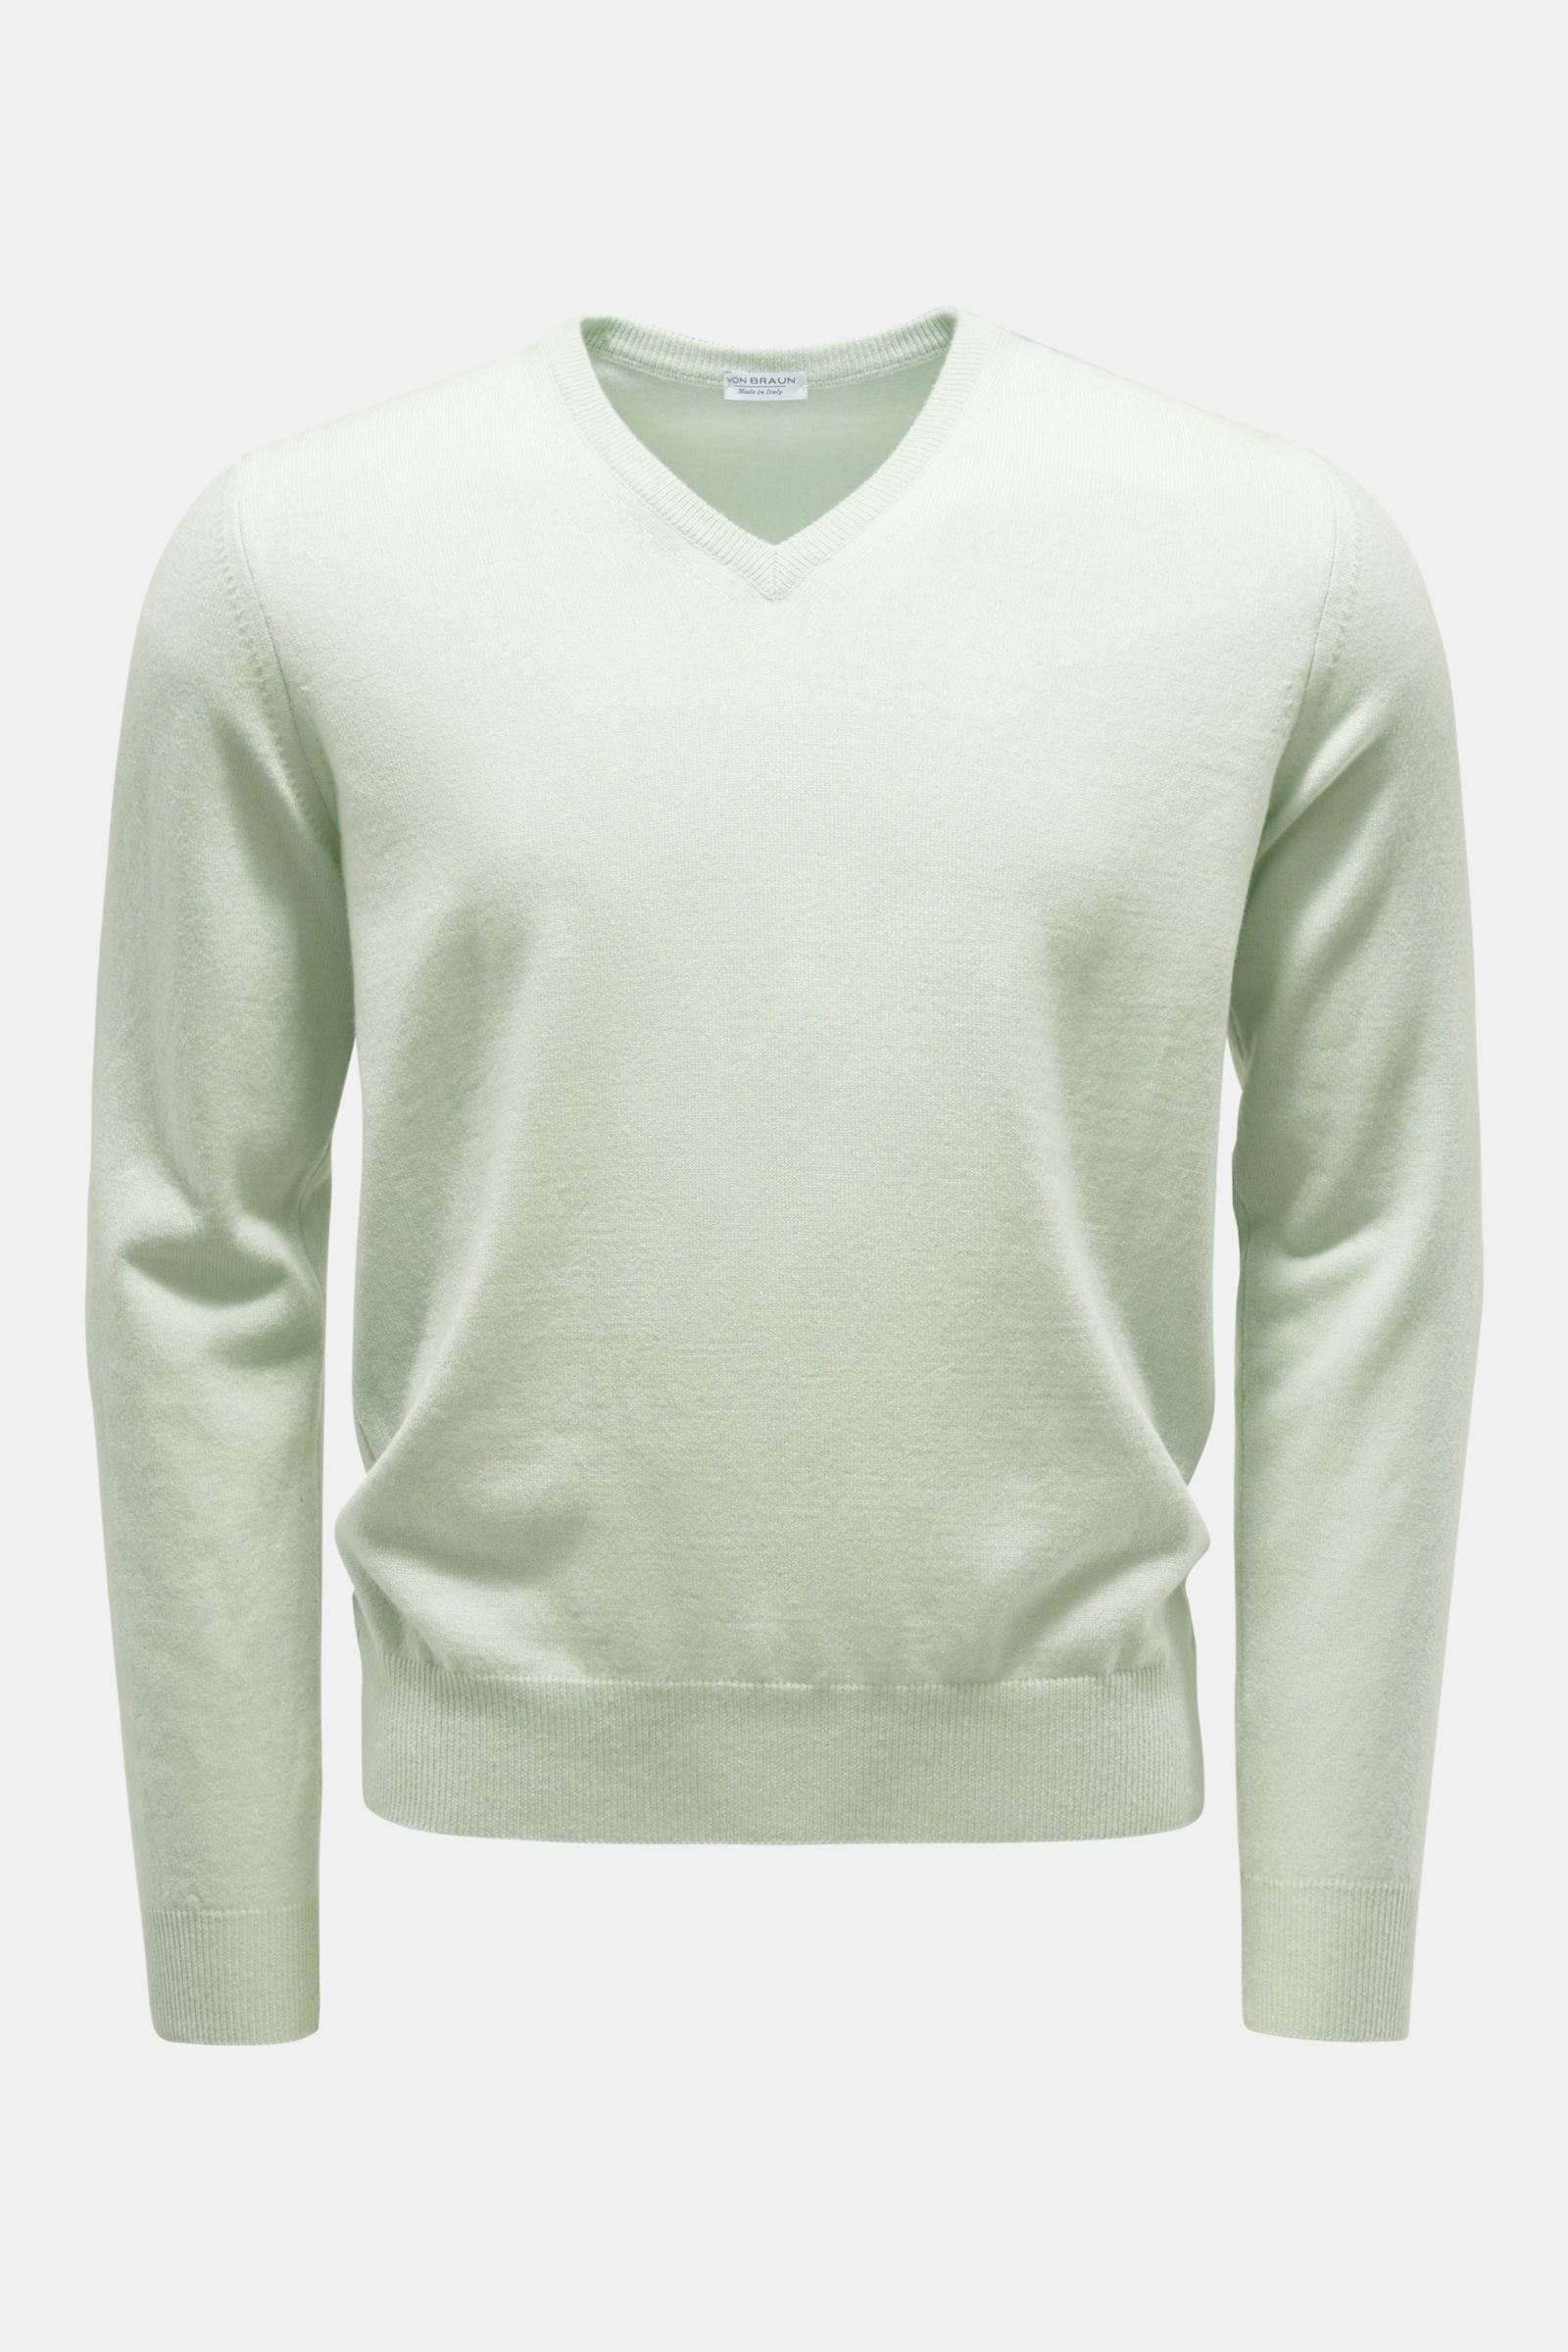 Cashmere V-neck jumper mint green